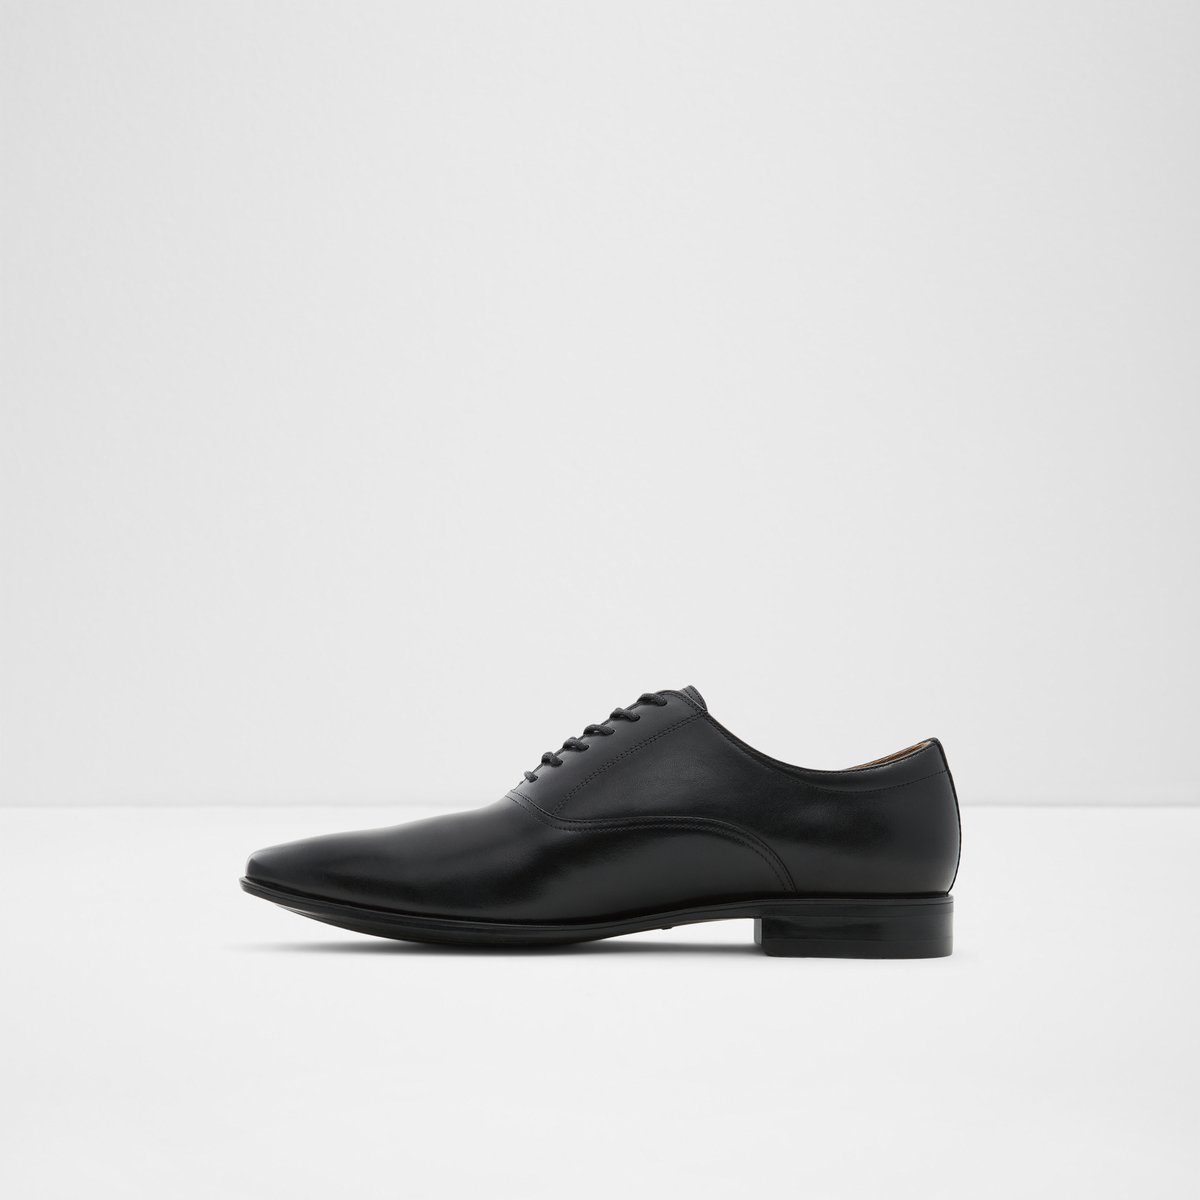 Nathon Black Men's Dress Shoes | ALDO Canada